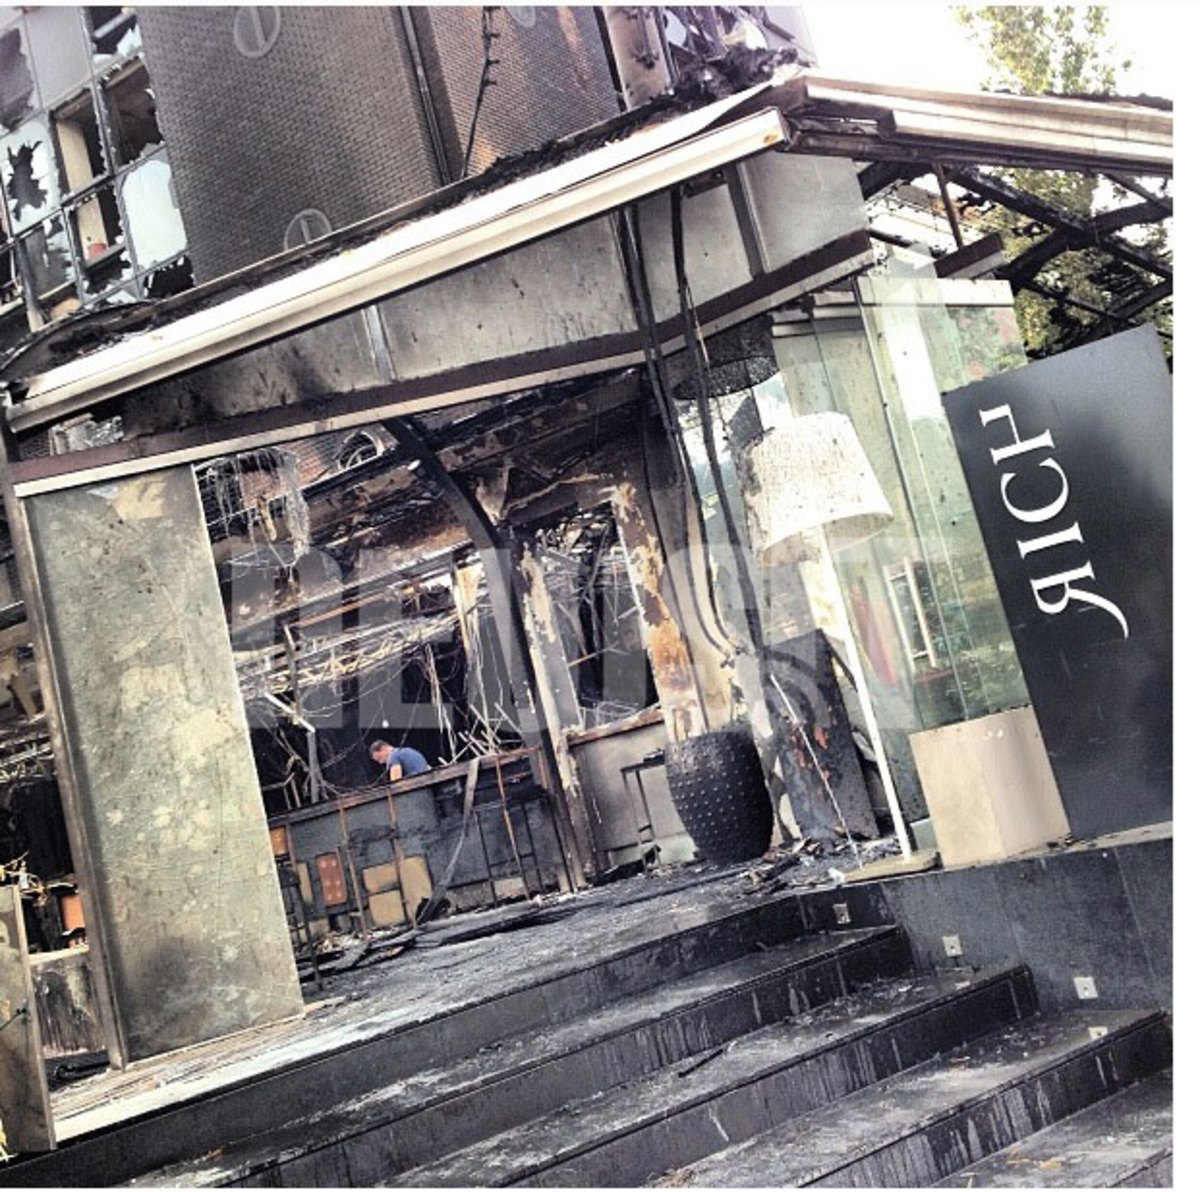 Μαφιόζικος ο εμπρησμός στην Γλυφάδα! 3 ή 4 άτομα με κουκούλες έβγαλαν έξω το προσωπικό της καφετέριας άρχισαν να τα σπάνε και έβαλαν φωτιά!